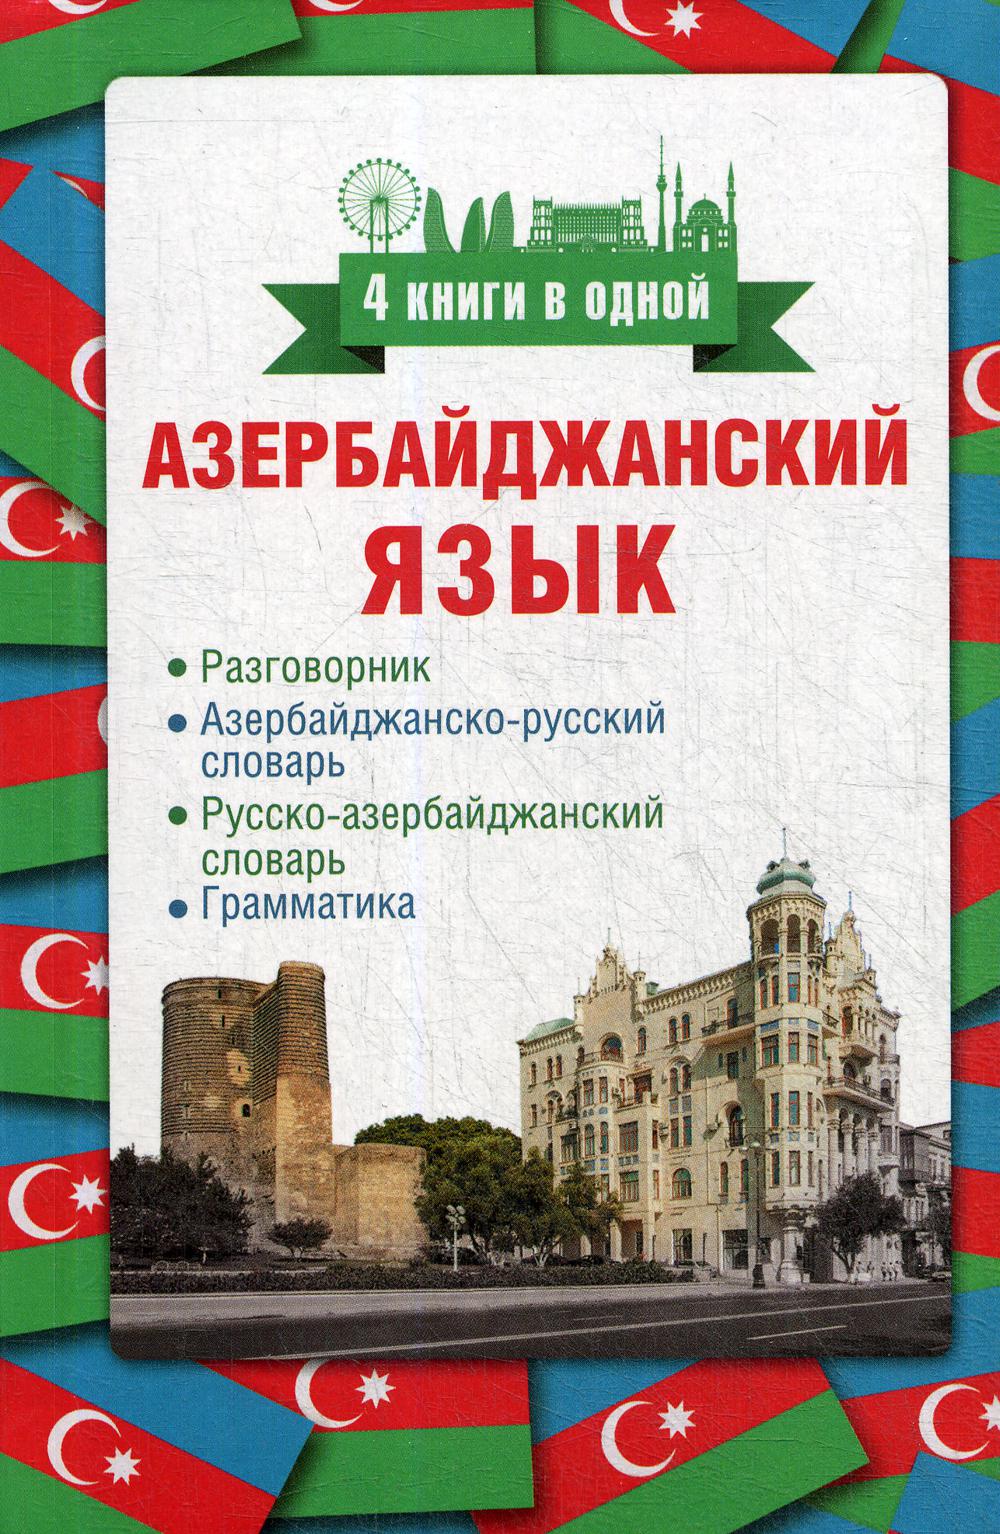 перевод с картинки с азербайджанского на русский